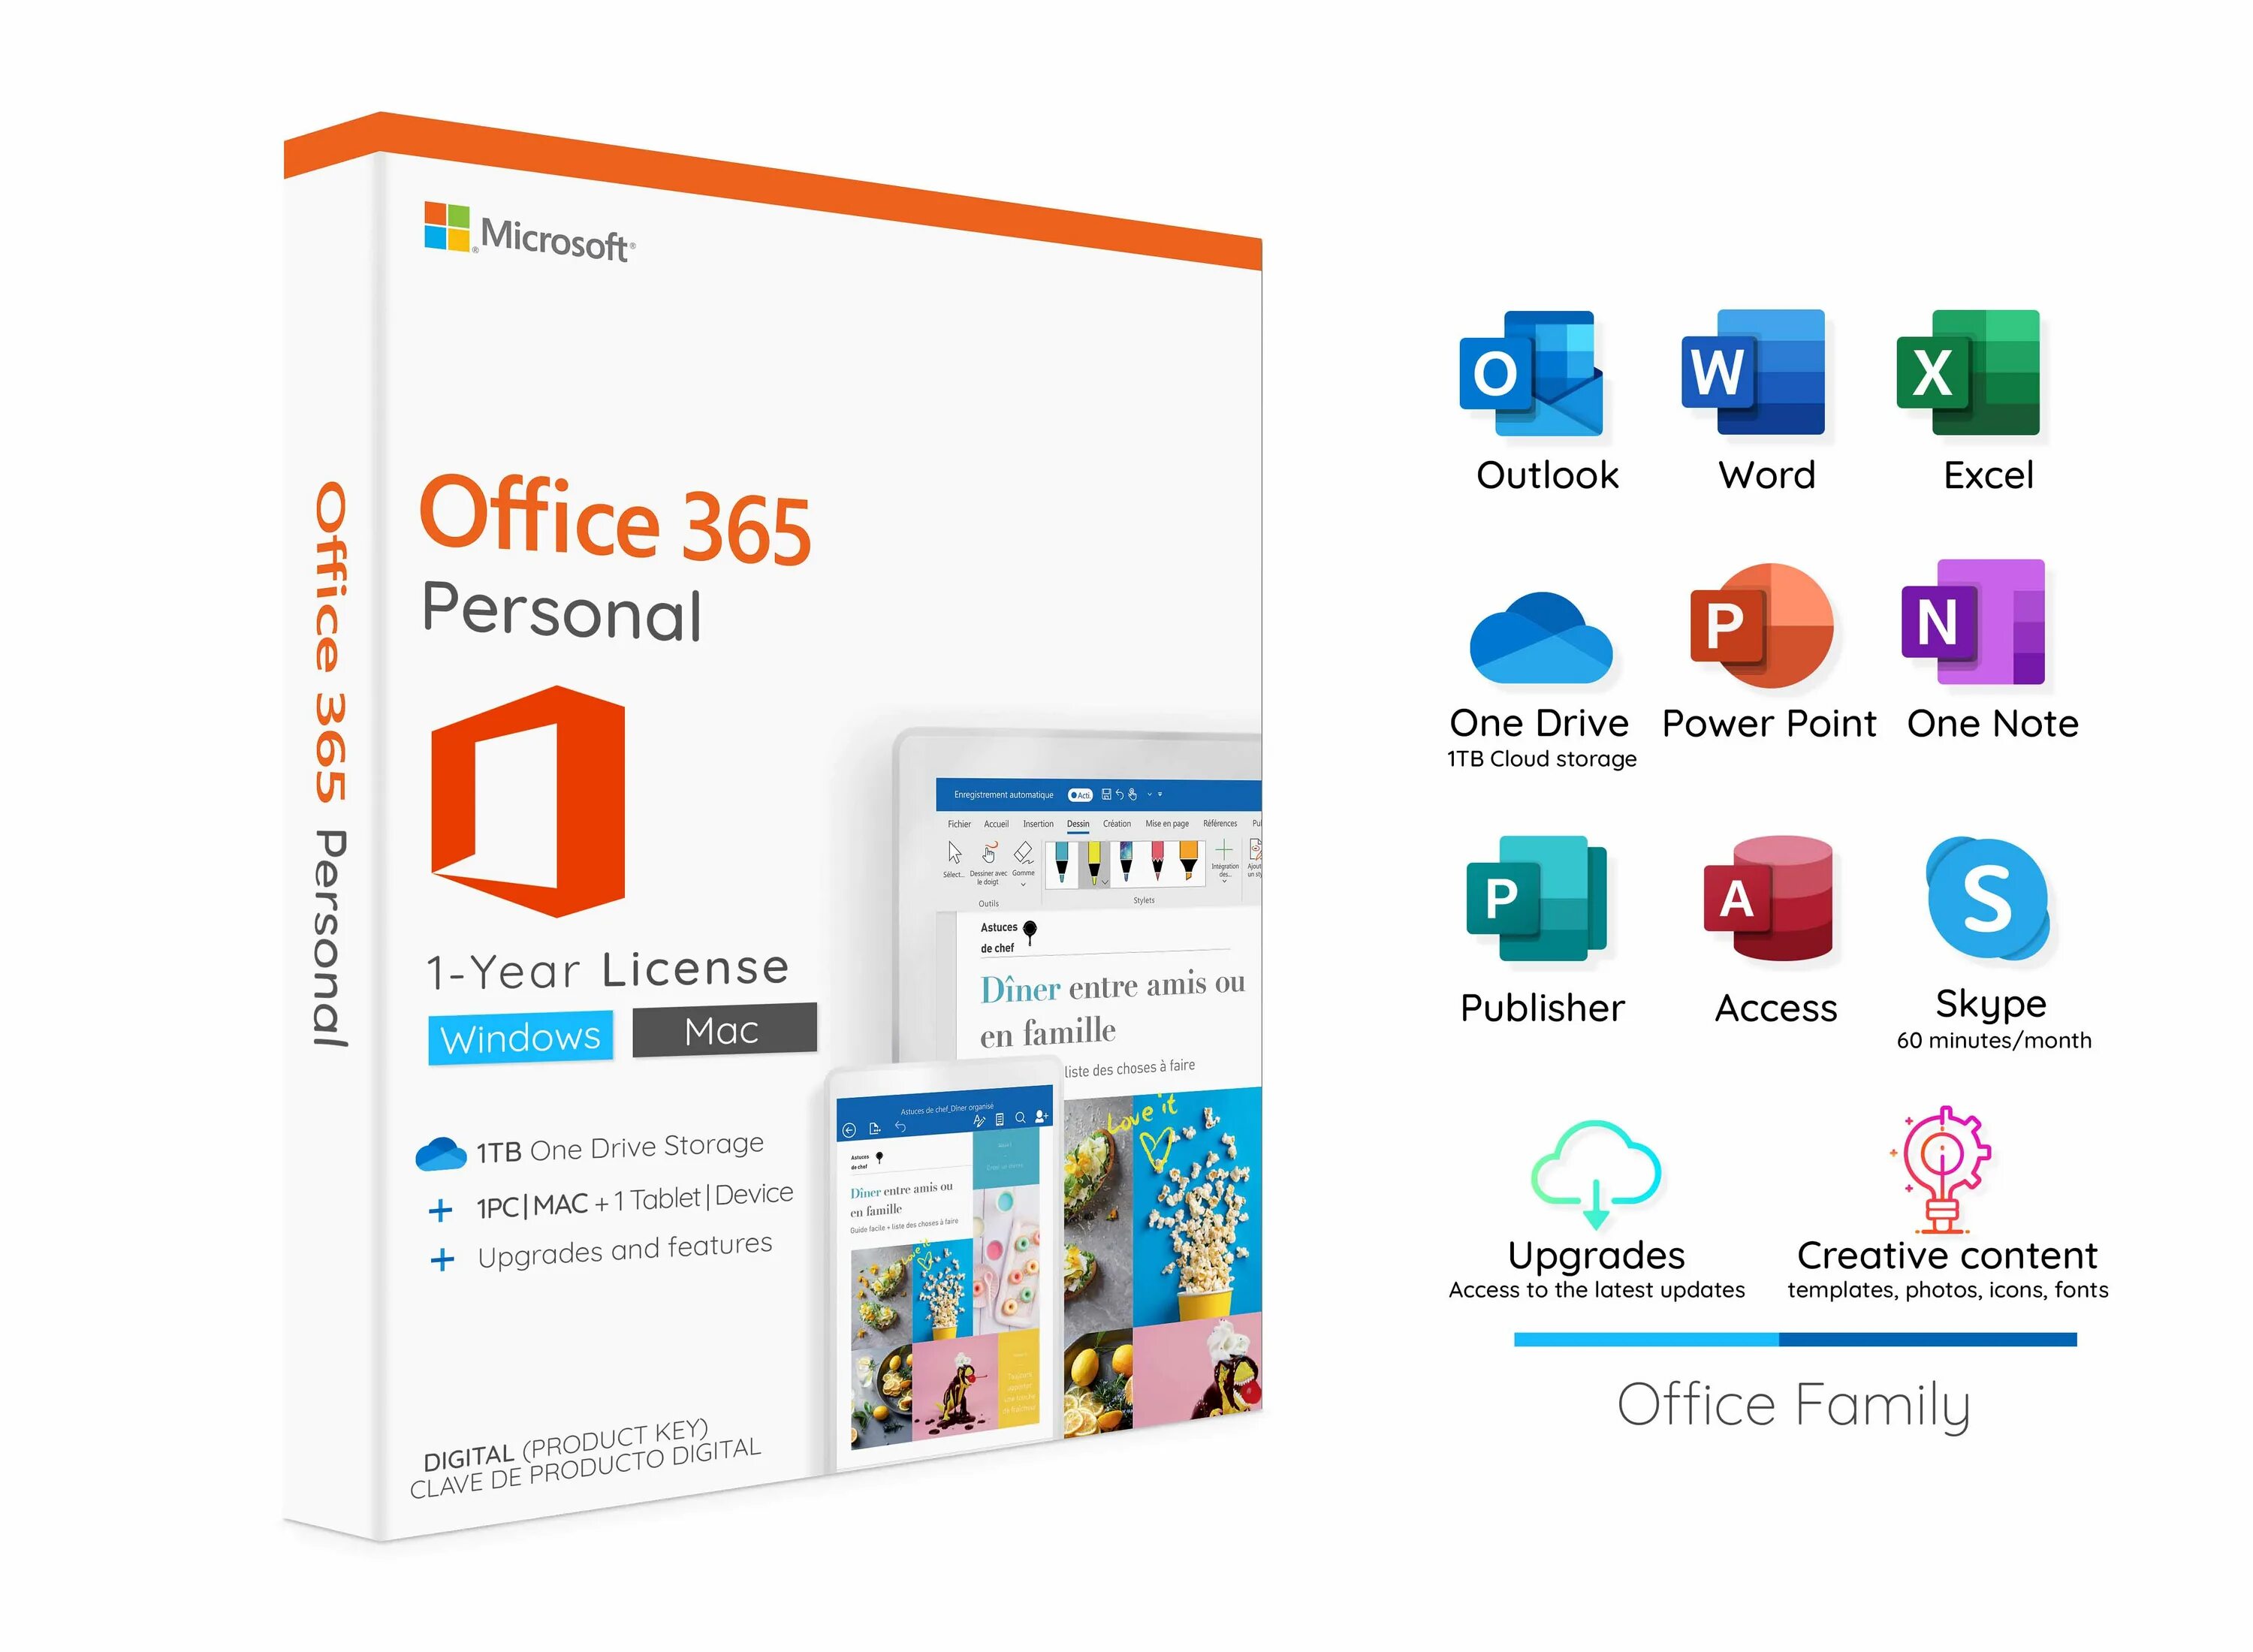 Office 365 mac. Microsoft 365 personal. Office 365 персональный. Microsoft 365 персональный. Microsoft Office 365 персональный - подписка (1 пользователь, 1 год, qq2-00733) лицензия и носитель.